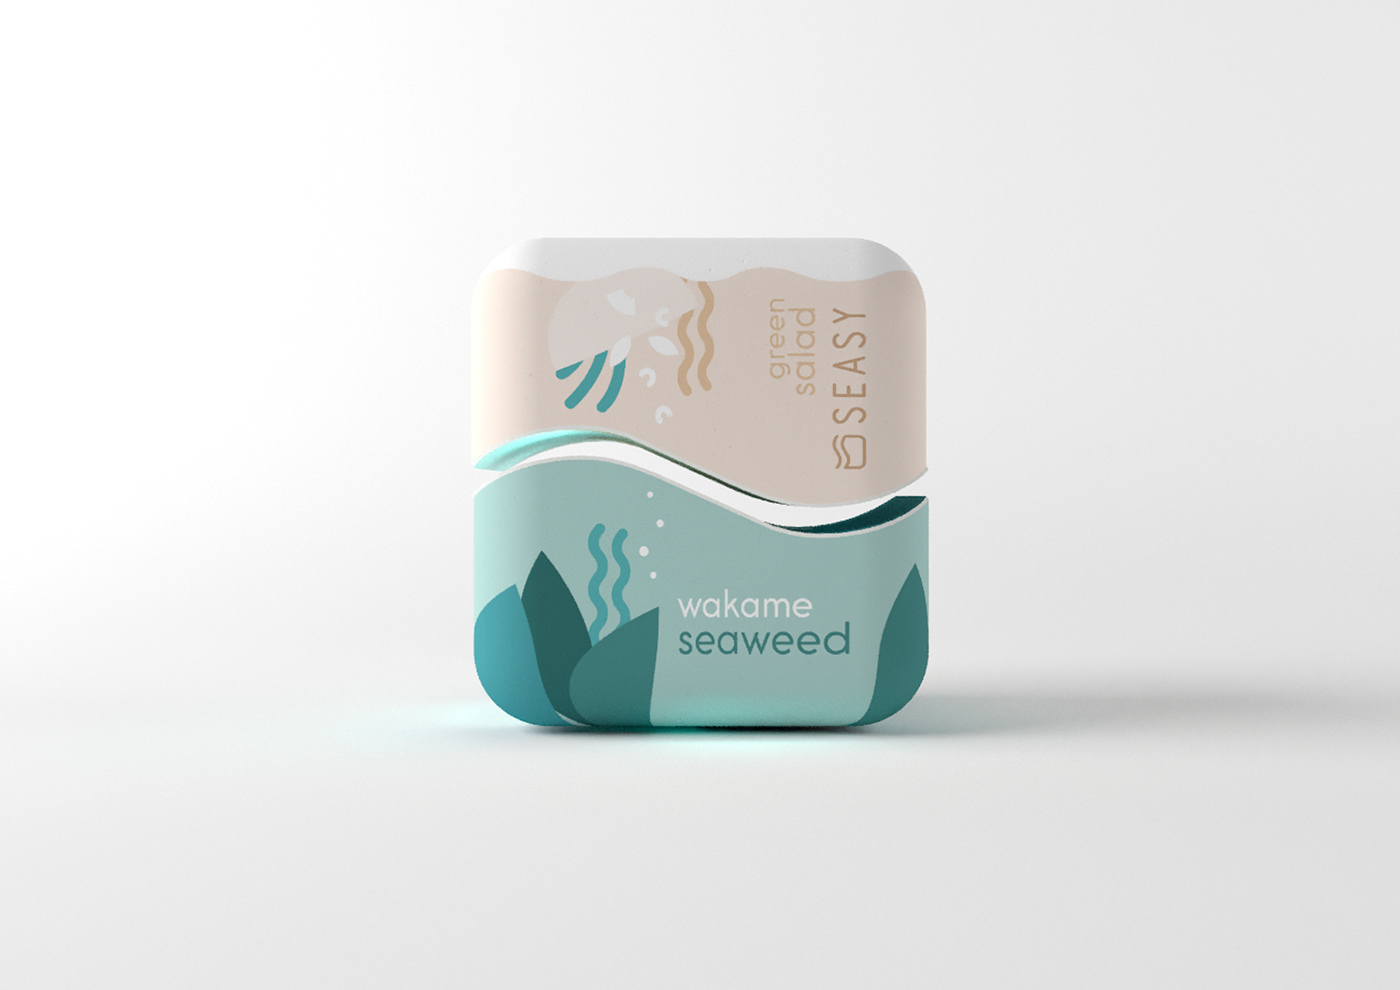 Packaging seaweed Food  cinema4d healthy 3D naba EPDA Seasy branding 